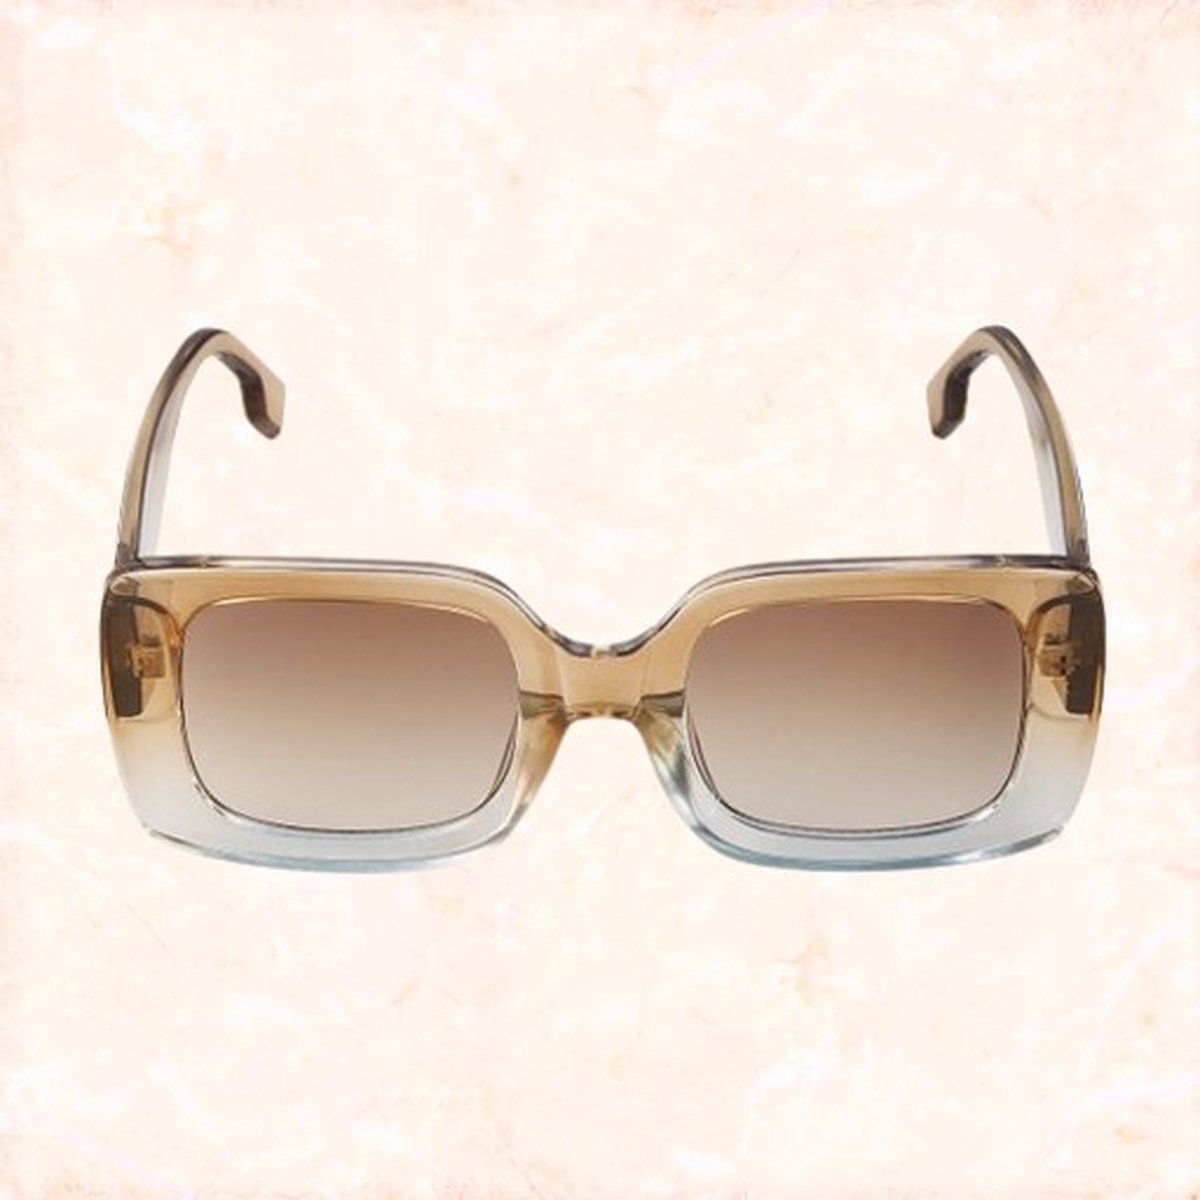 Jobo by Jet - Island life sunglasses - Grote zonnebril - Doorzichtig - UV3 - Inclusief súper leuk brillenhoesje!